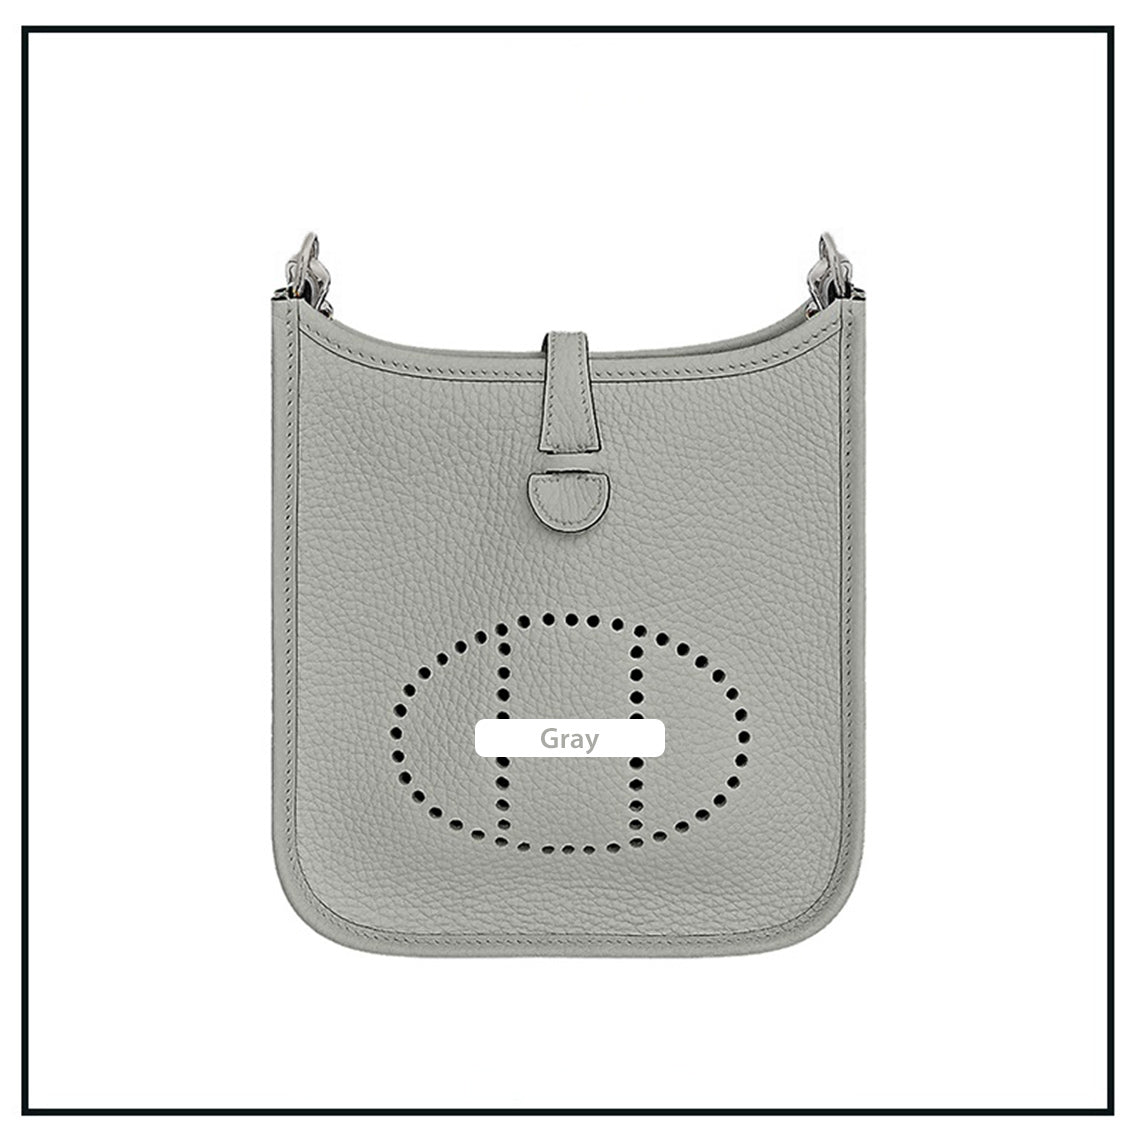 Grey Evelyne Bag | DIY Hermes Bag Leather Kit - Mini Size | POPSEWING®